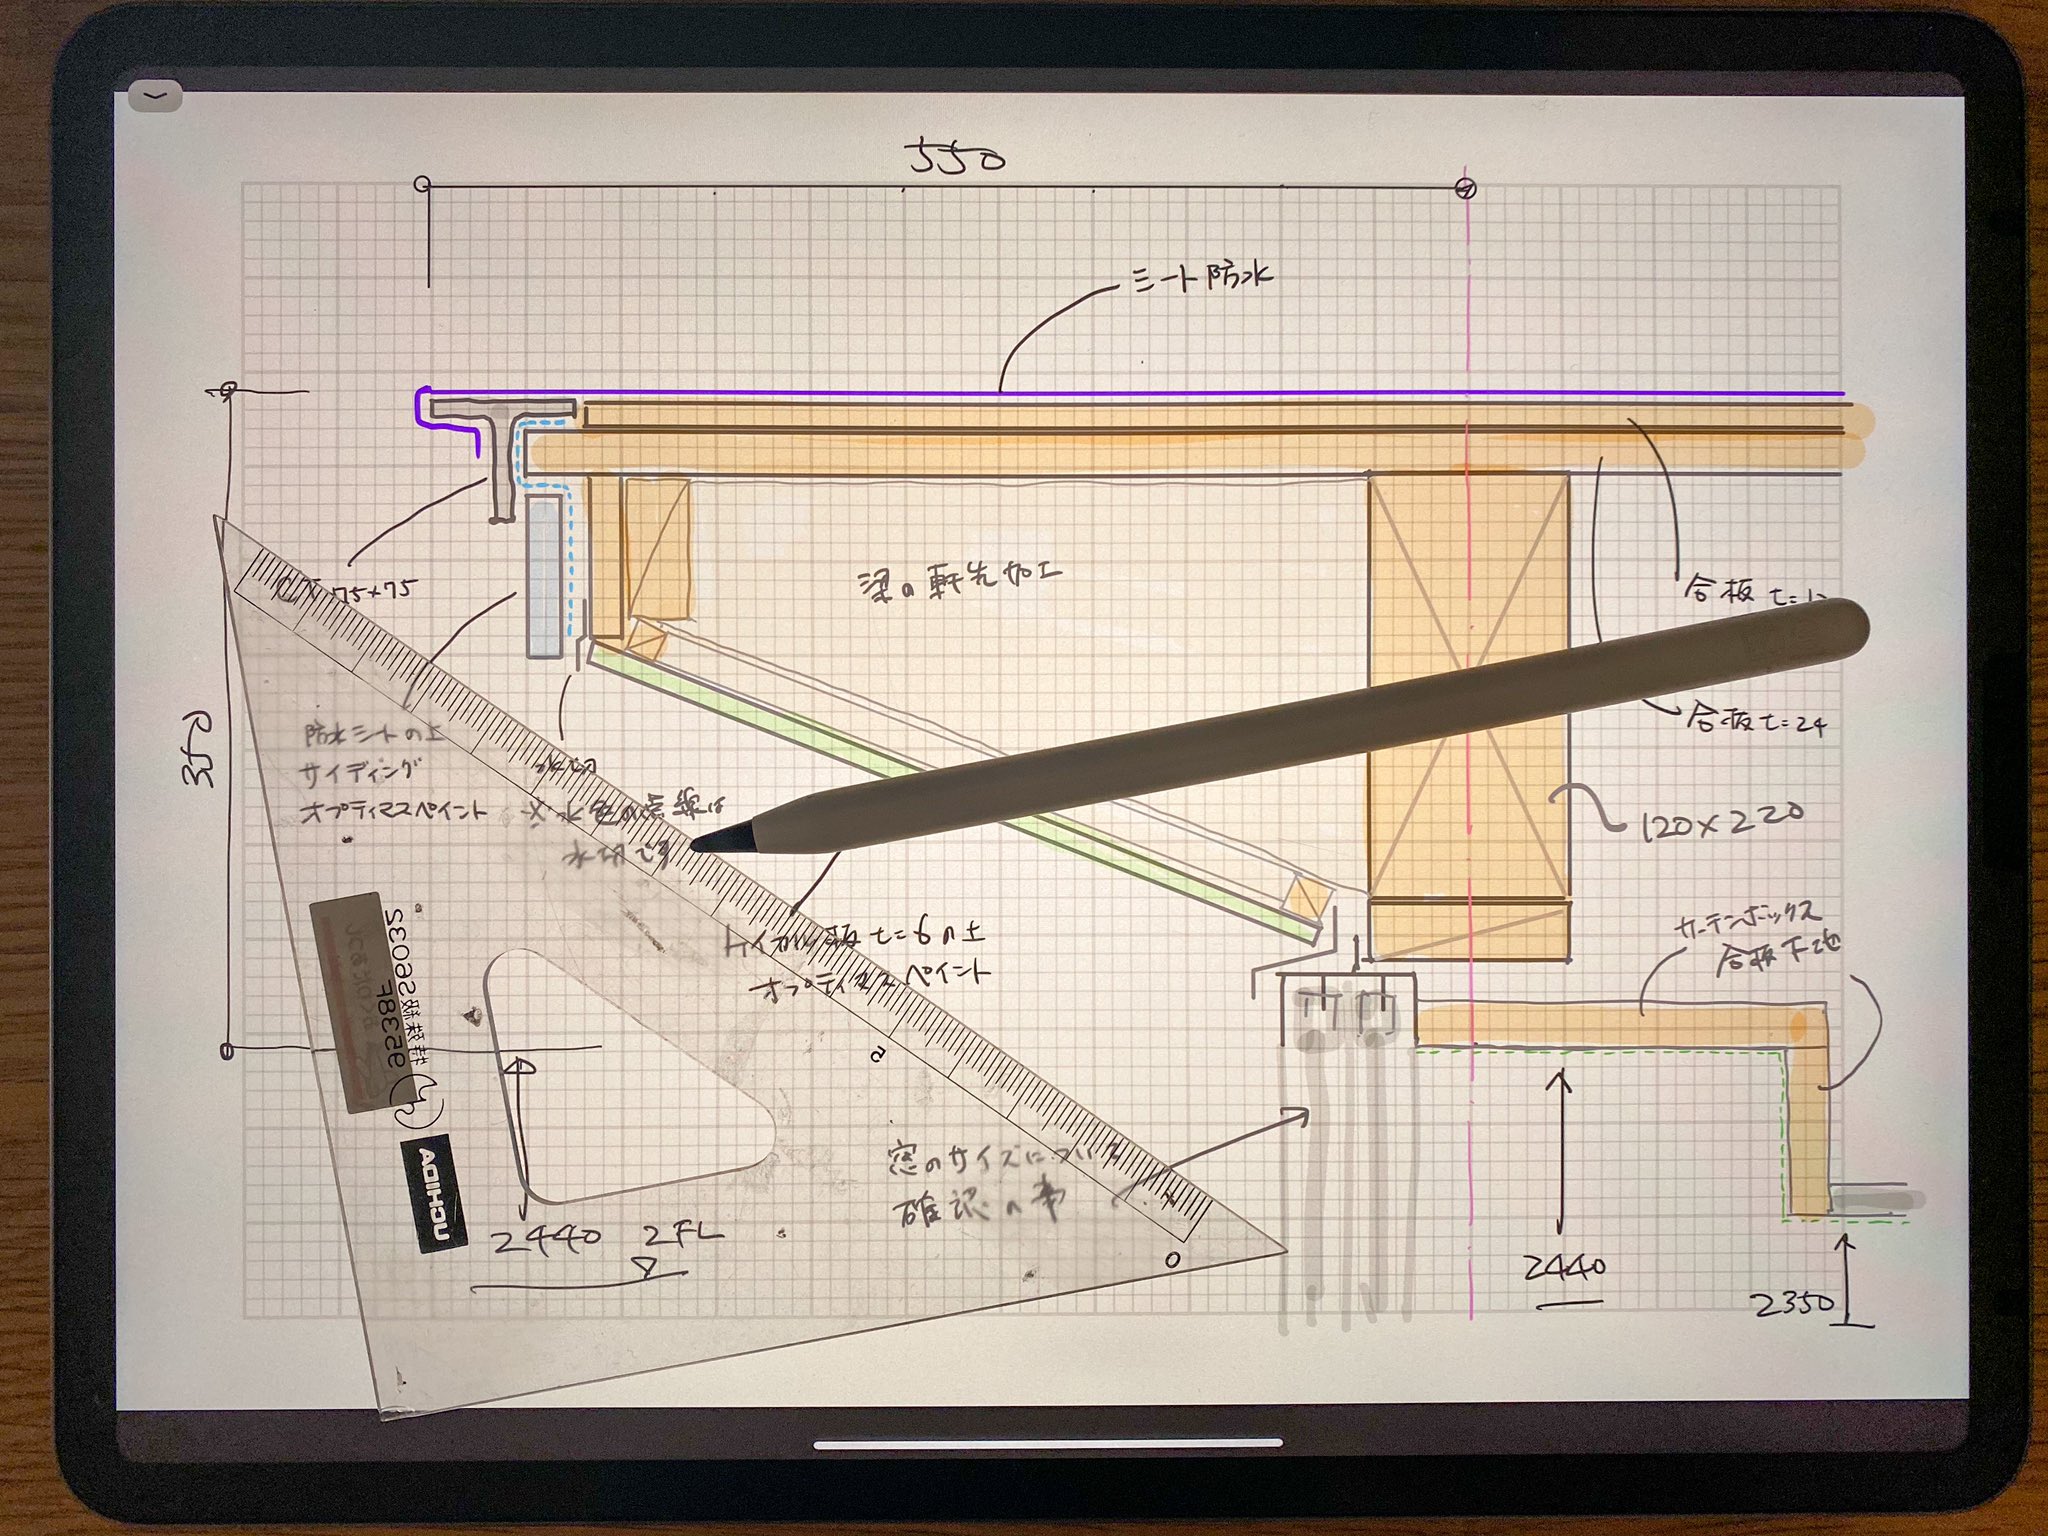 奥和田 健 Okuwada Takeshi Apple Pencilとipad Pro スケッチで直線を描きたくて 色んなアプリを試したが 物理的なプラ透明の定規が1番良いとの結果になった T Co Fhmqcpkn2l Twitter